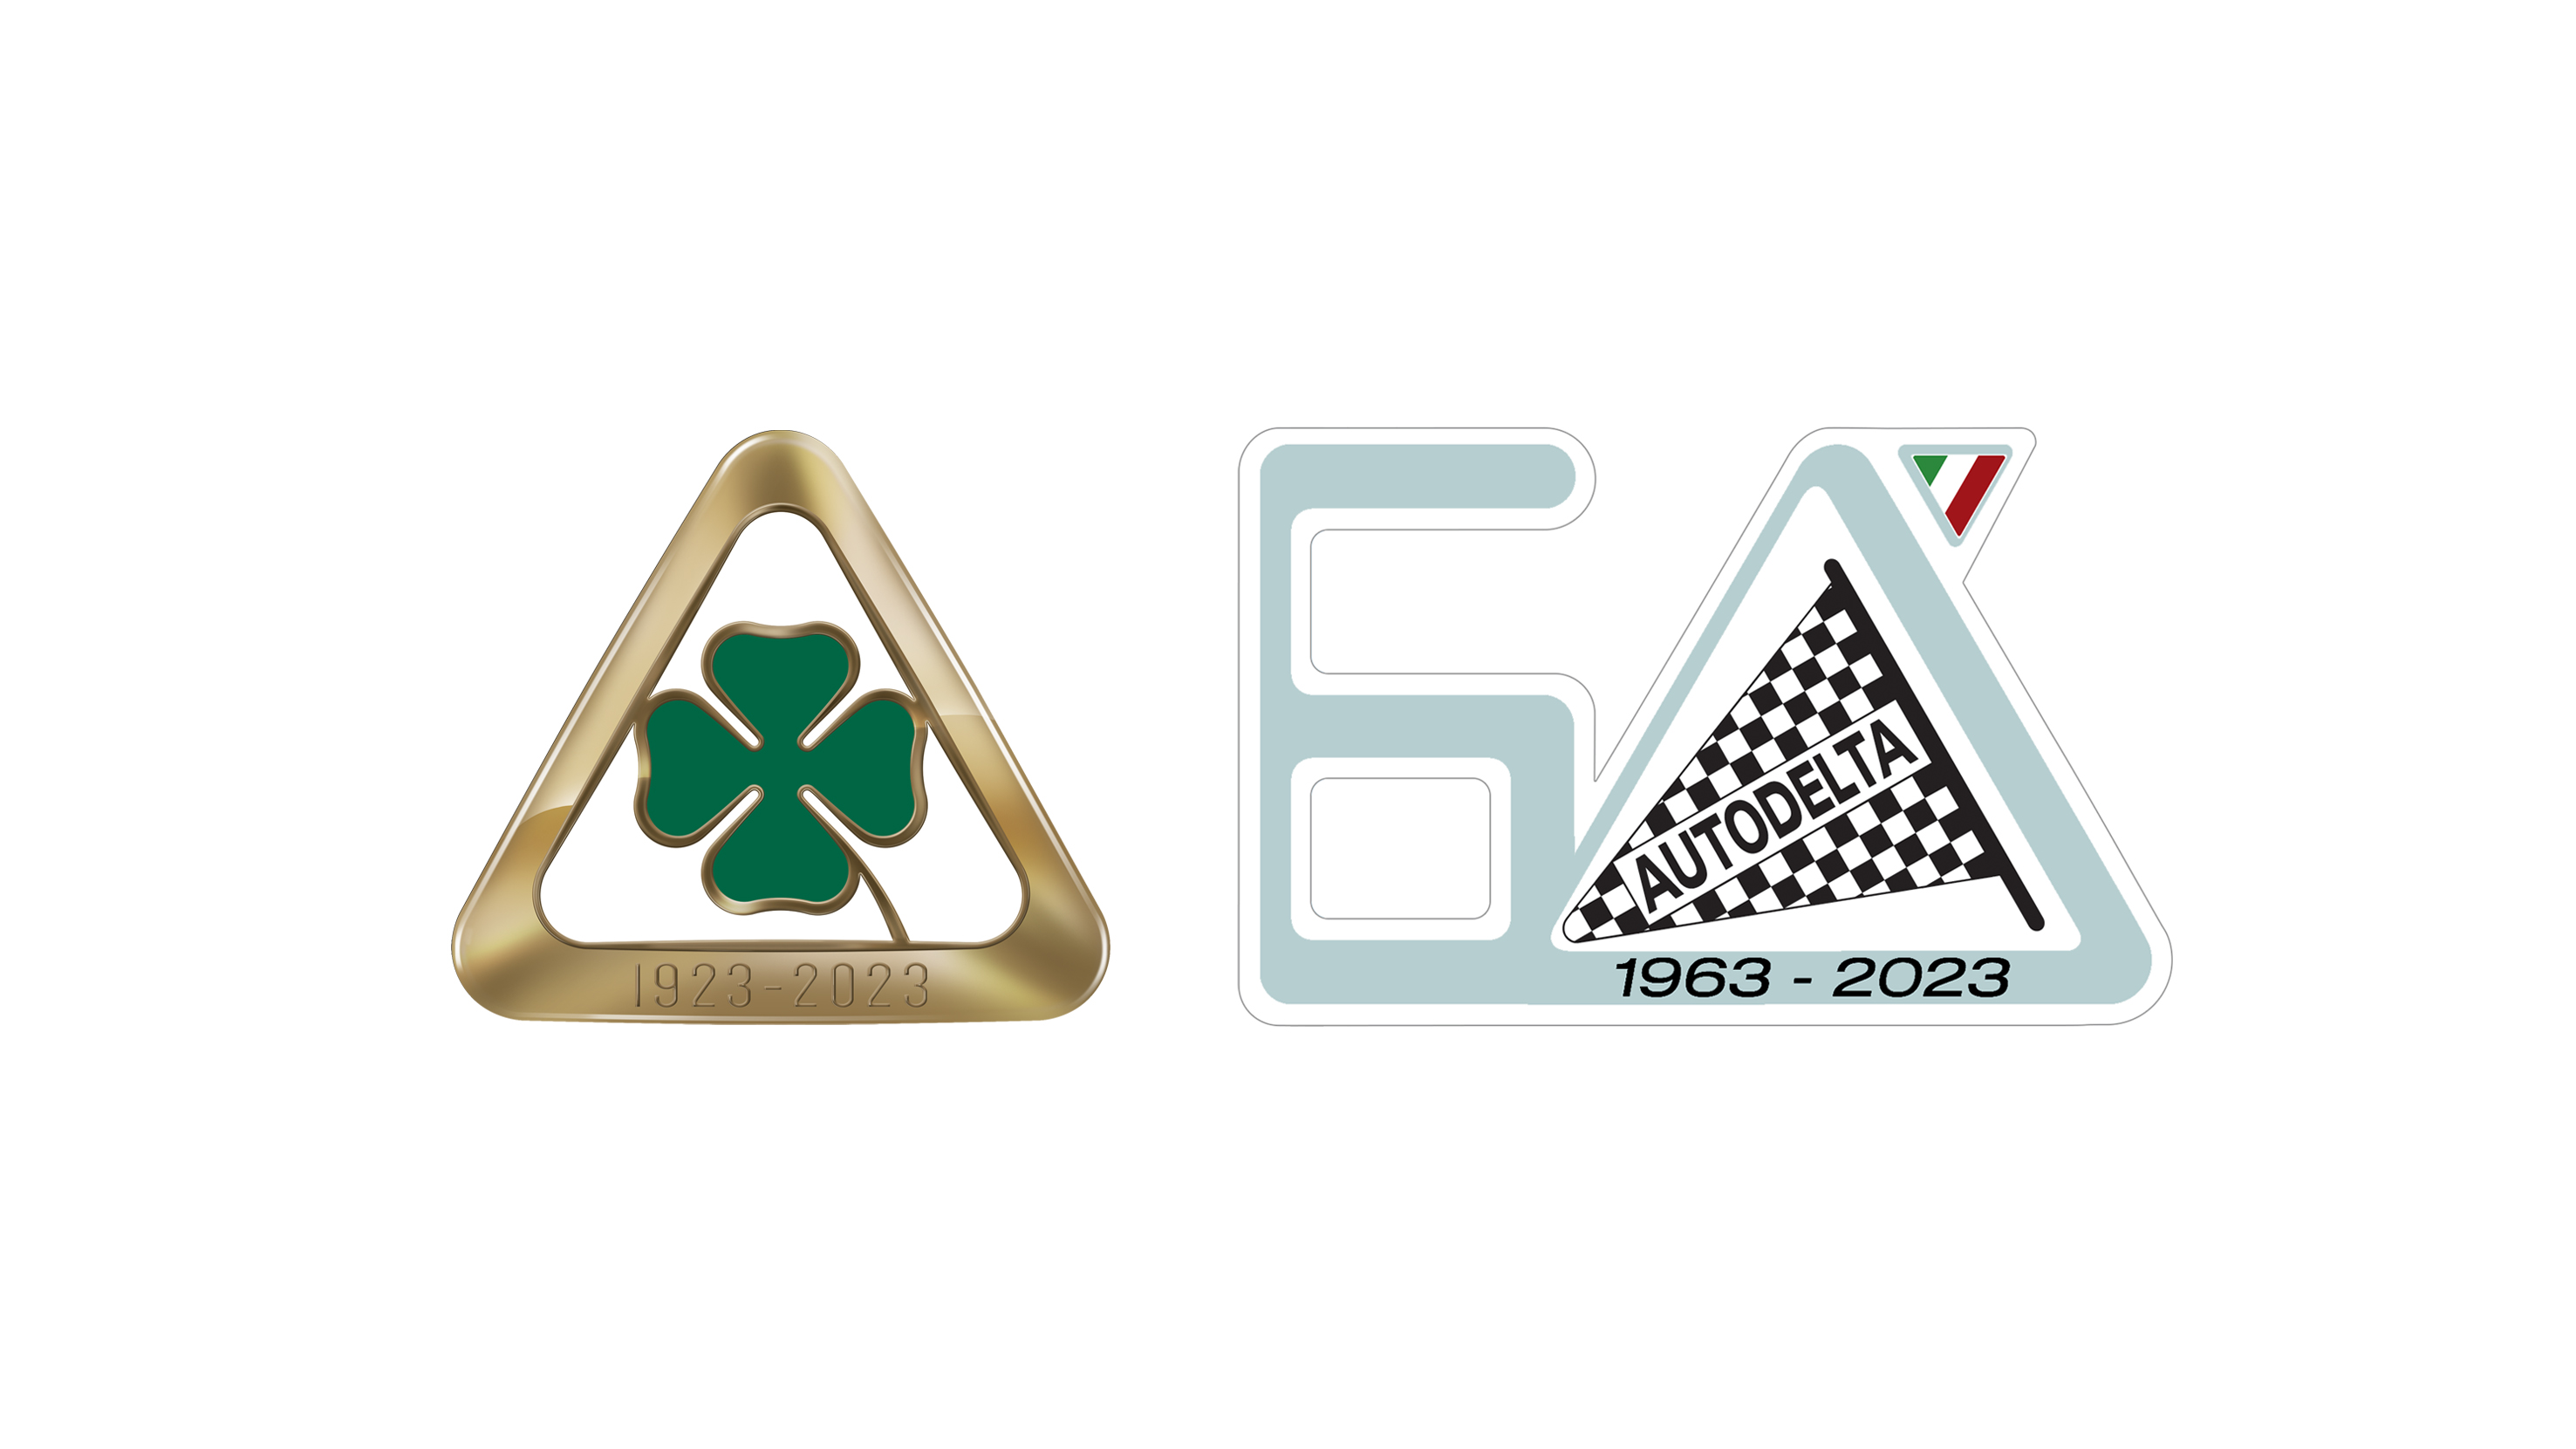 روميو"تحتفل بالذكرى السنوية لـ Quadrifoglio و لـ Autodelta من خلال الكشف عن شعارين جديدين